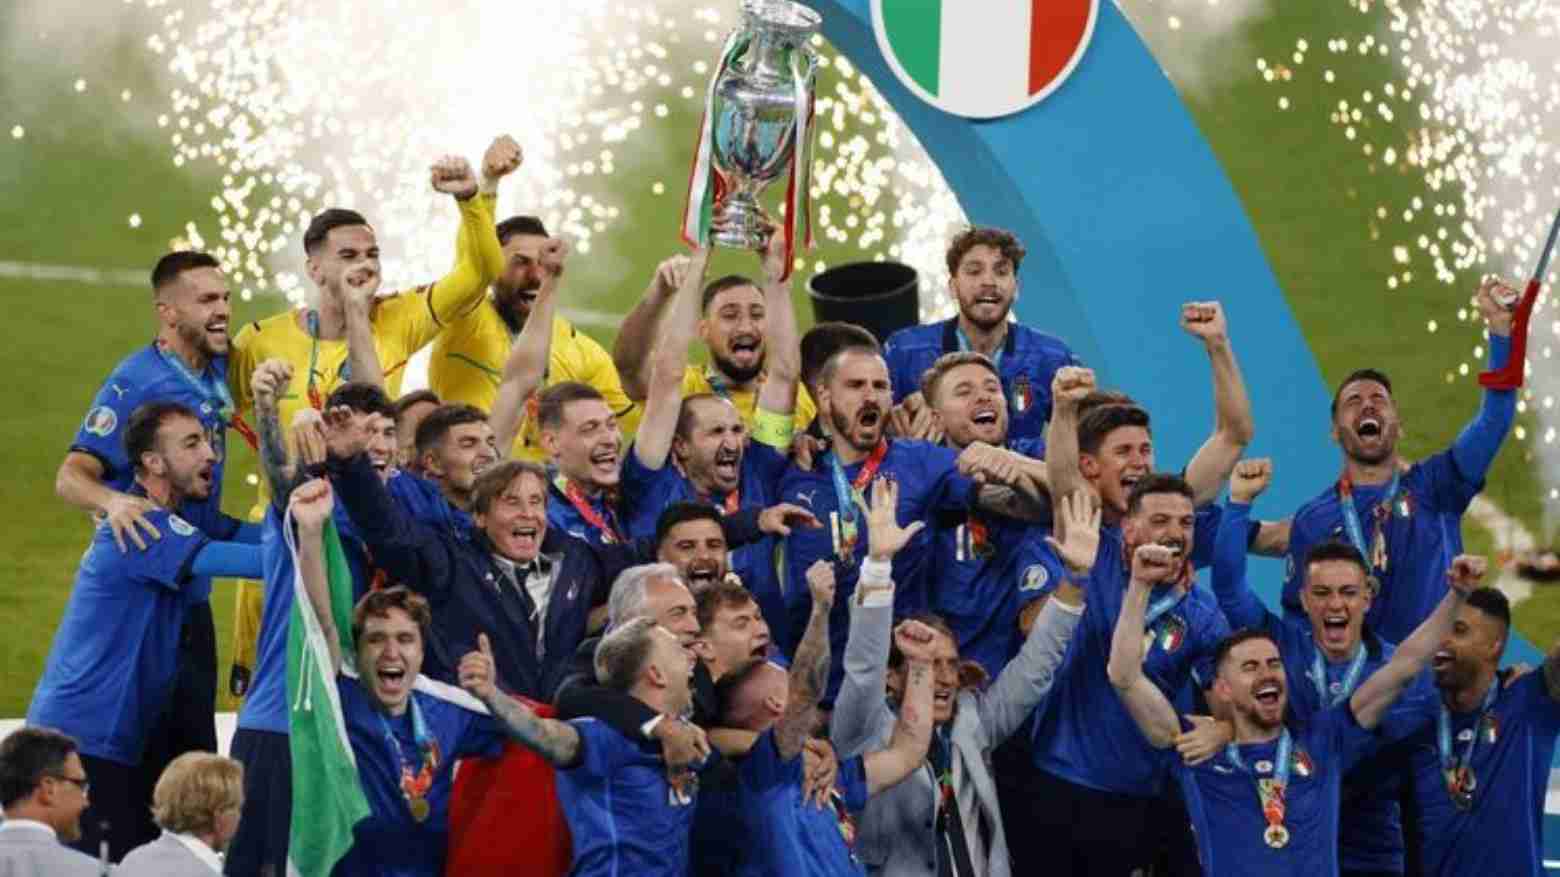 Ini Daftar Lengkap Juara Piala Eropa Sepanjang Sejarah, Timnas Italia Dua Kali Raih Trofi Euro